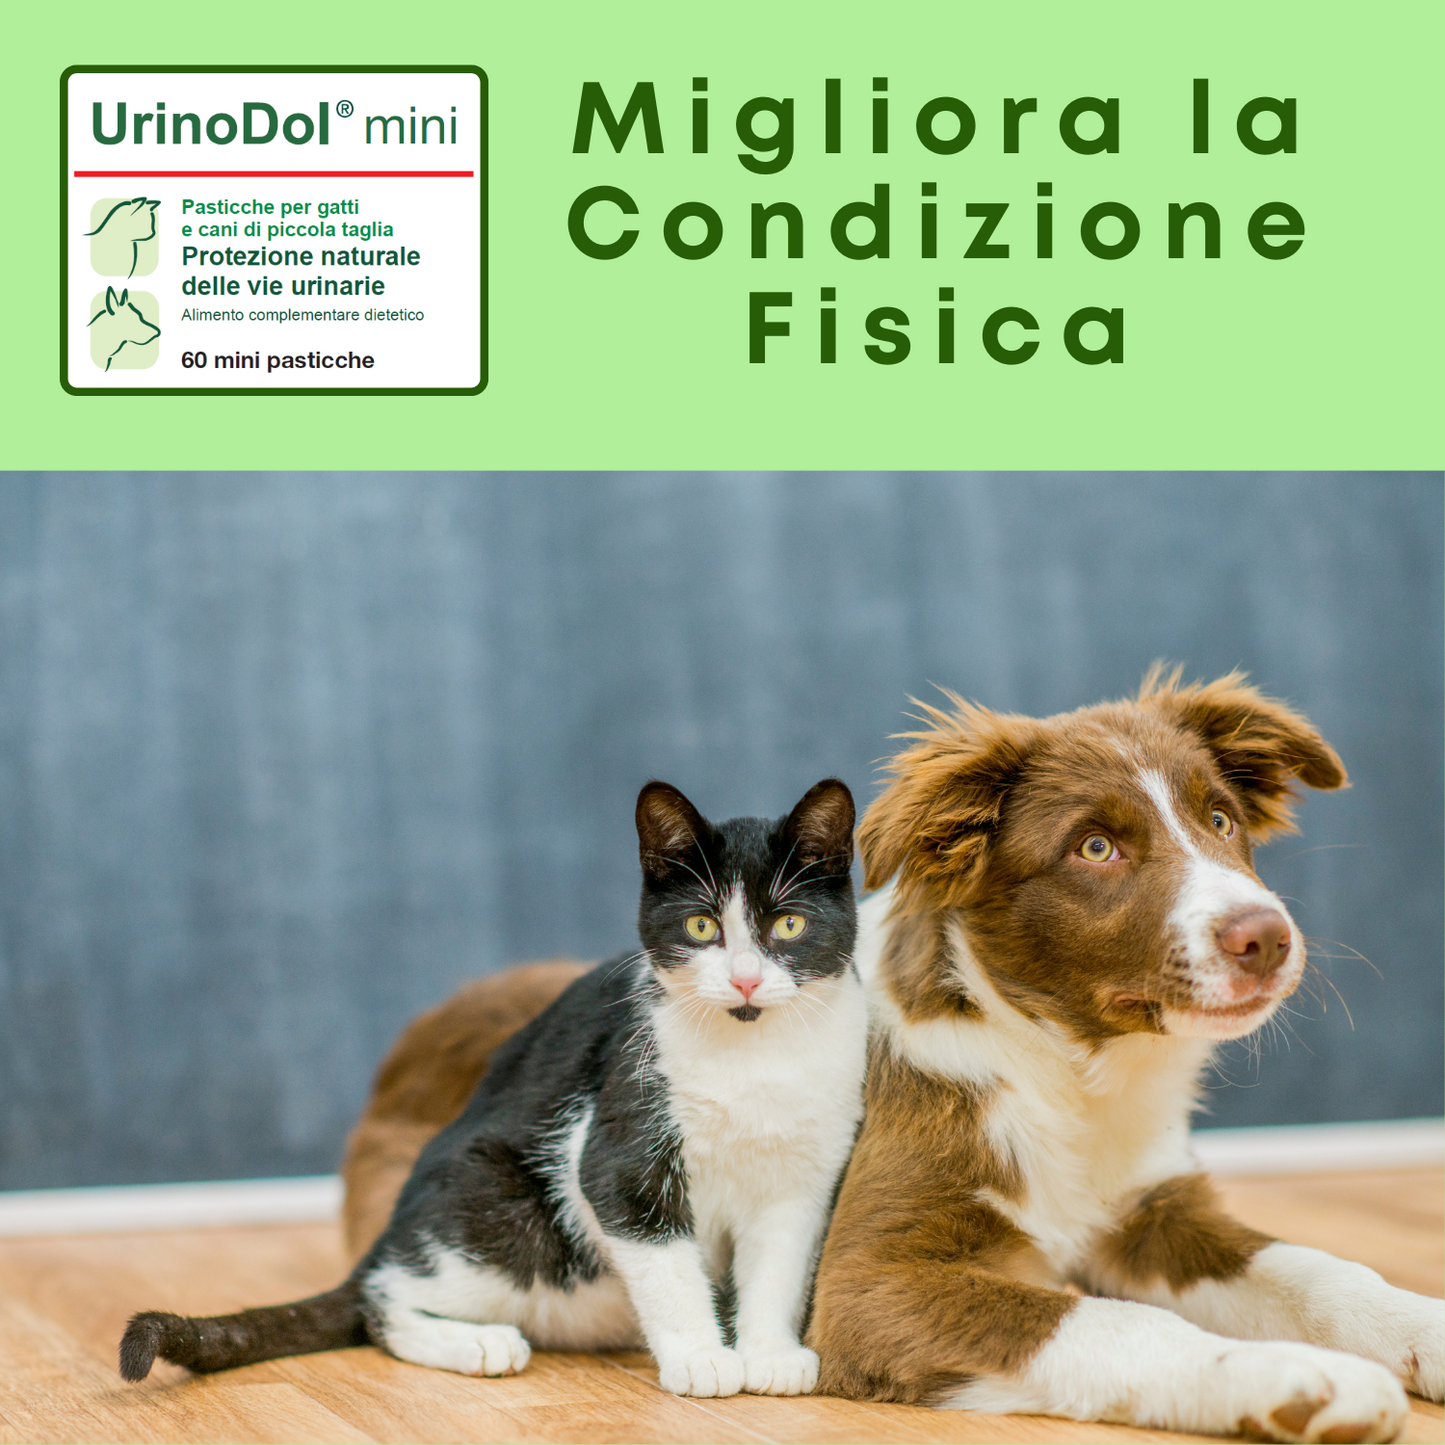 UrinoDol mini 60  "... protezione naturale delle vie urinarie del gatto ... "